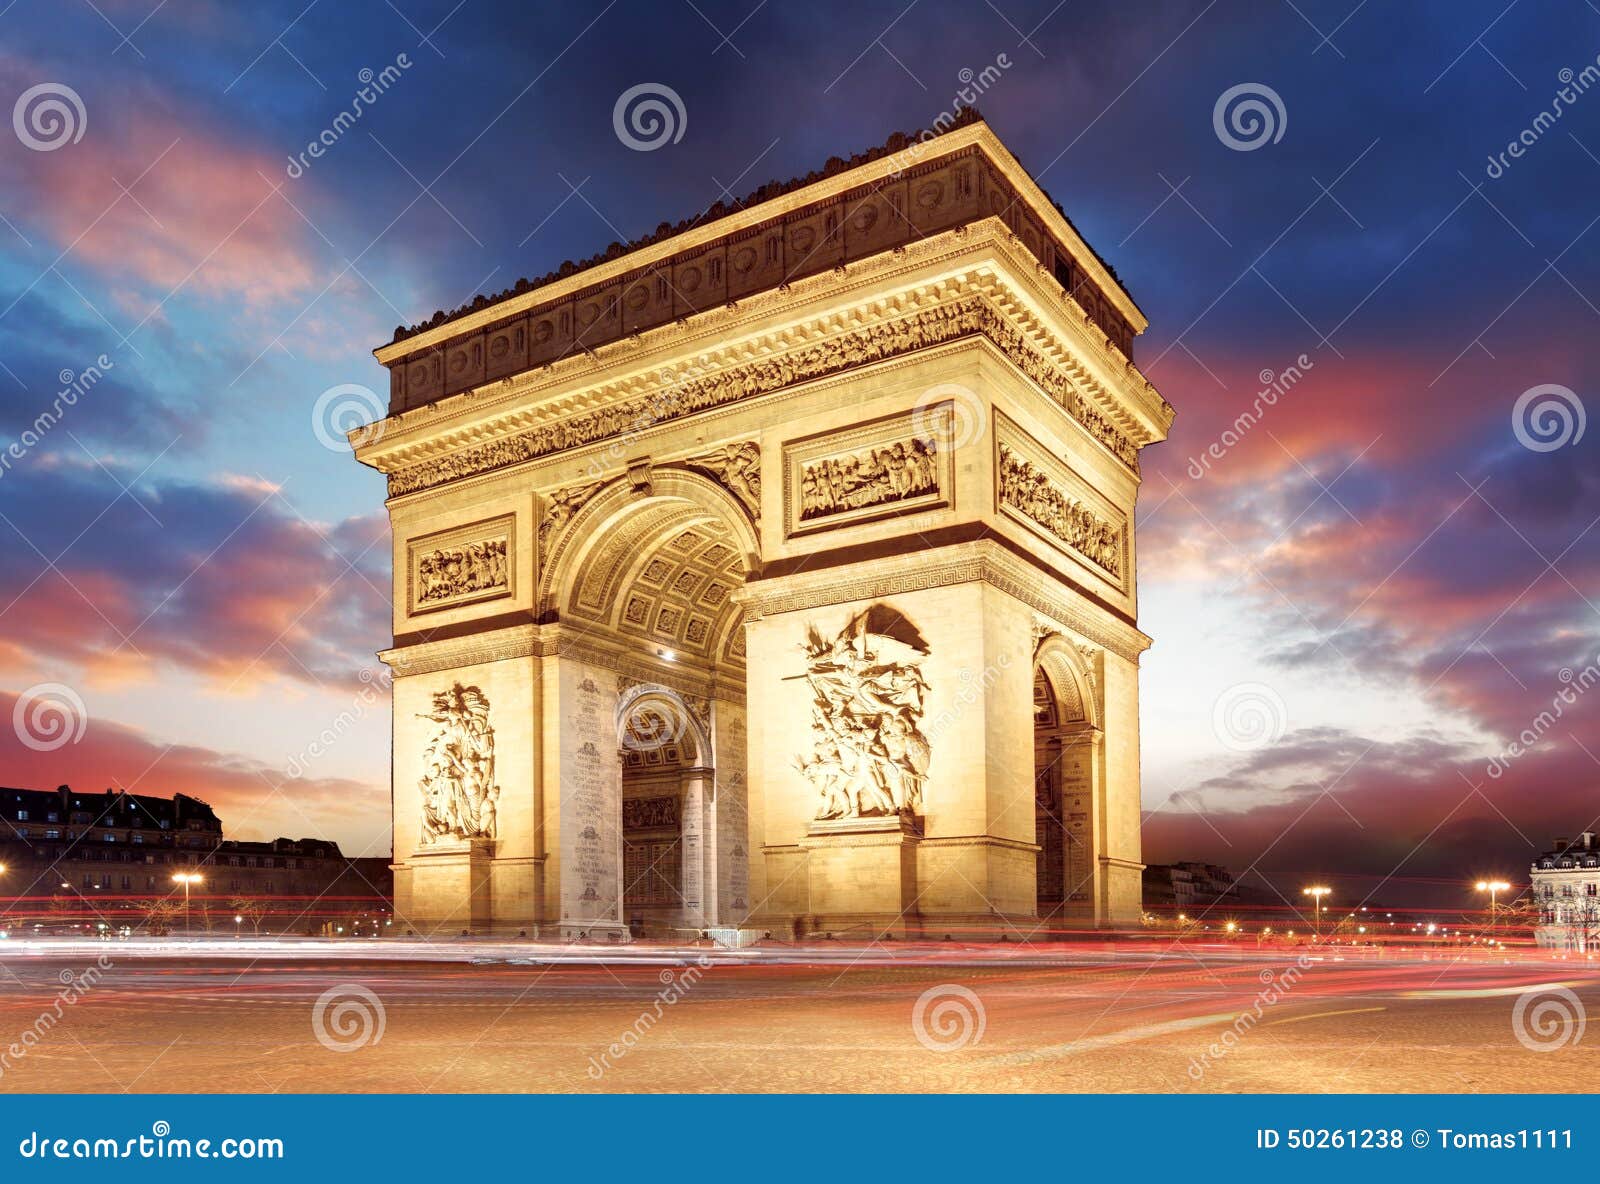 paris, famous arc de triumph at evening , france